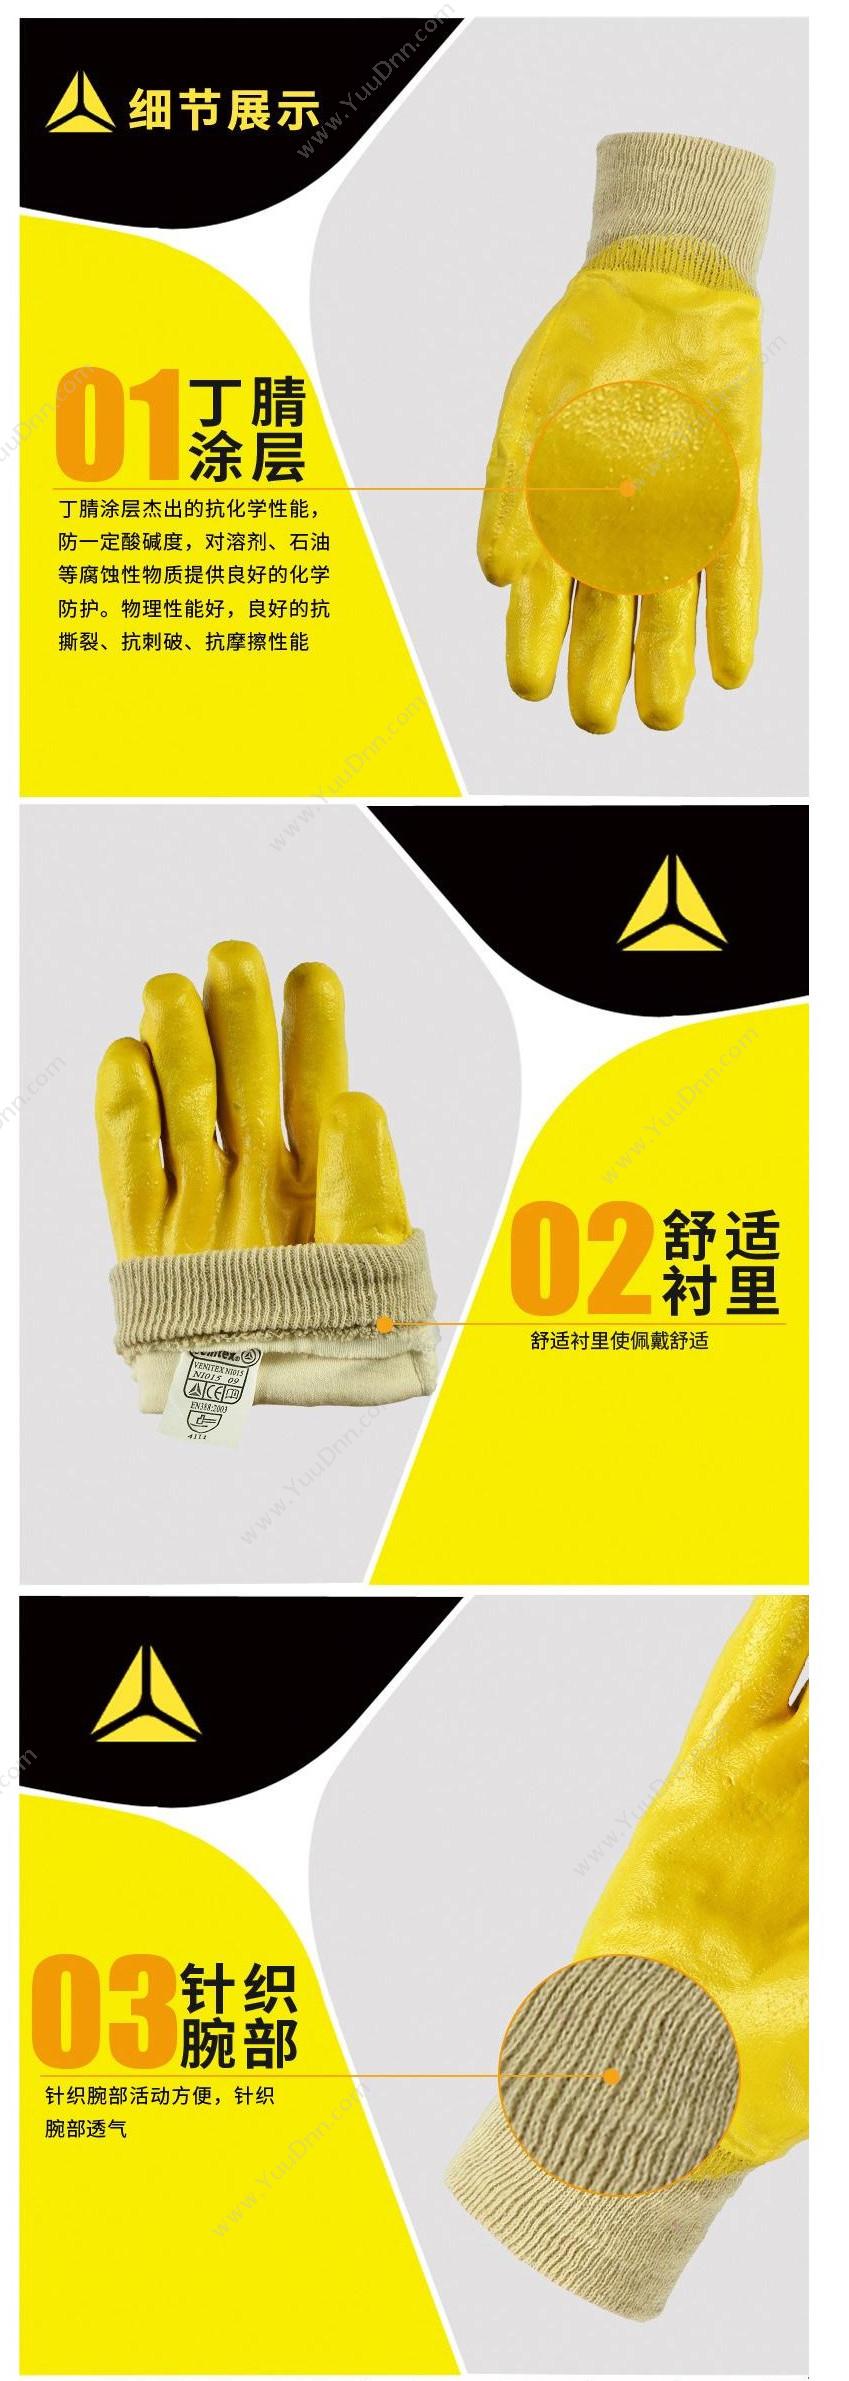 代尔塔 Delta 201015 轻型丁腈涂层手套 NI015/10（黄） 12副/打 普通手套